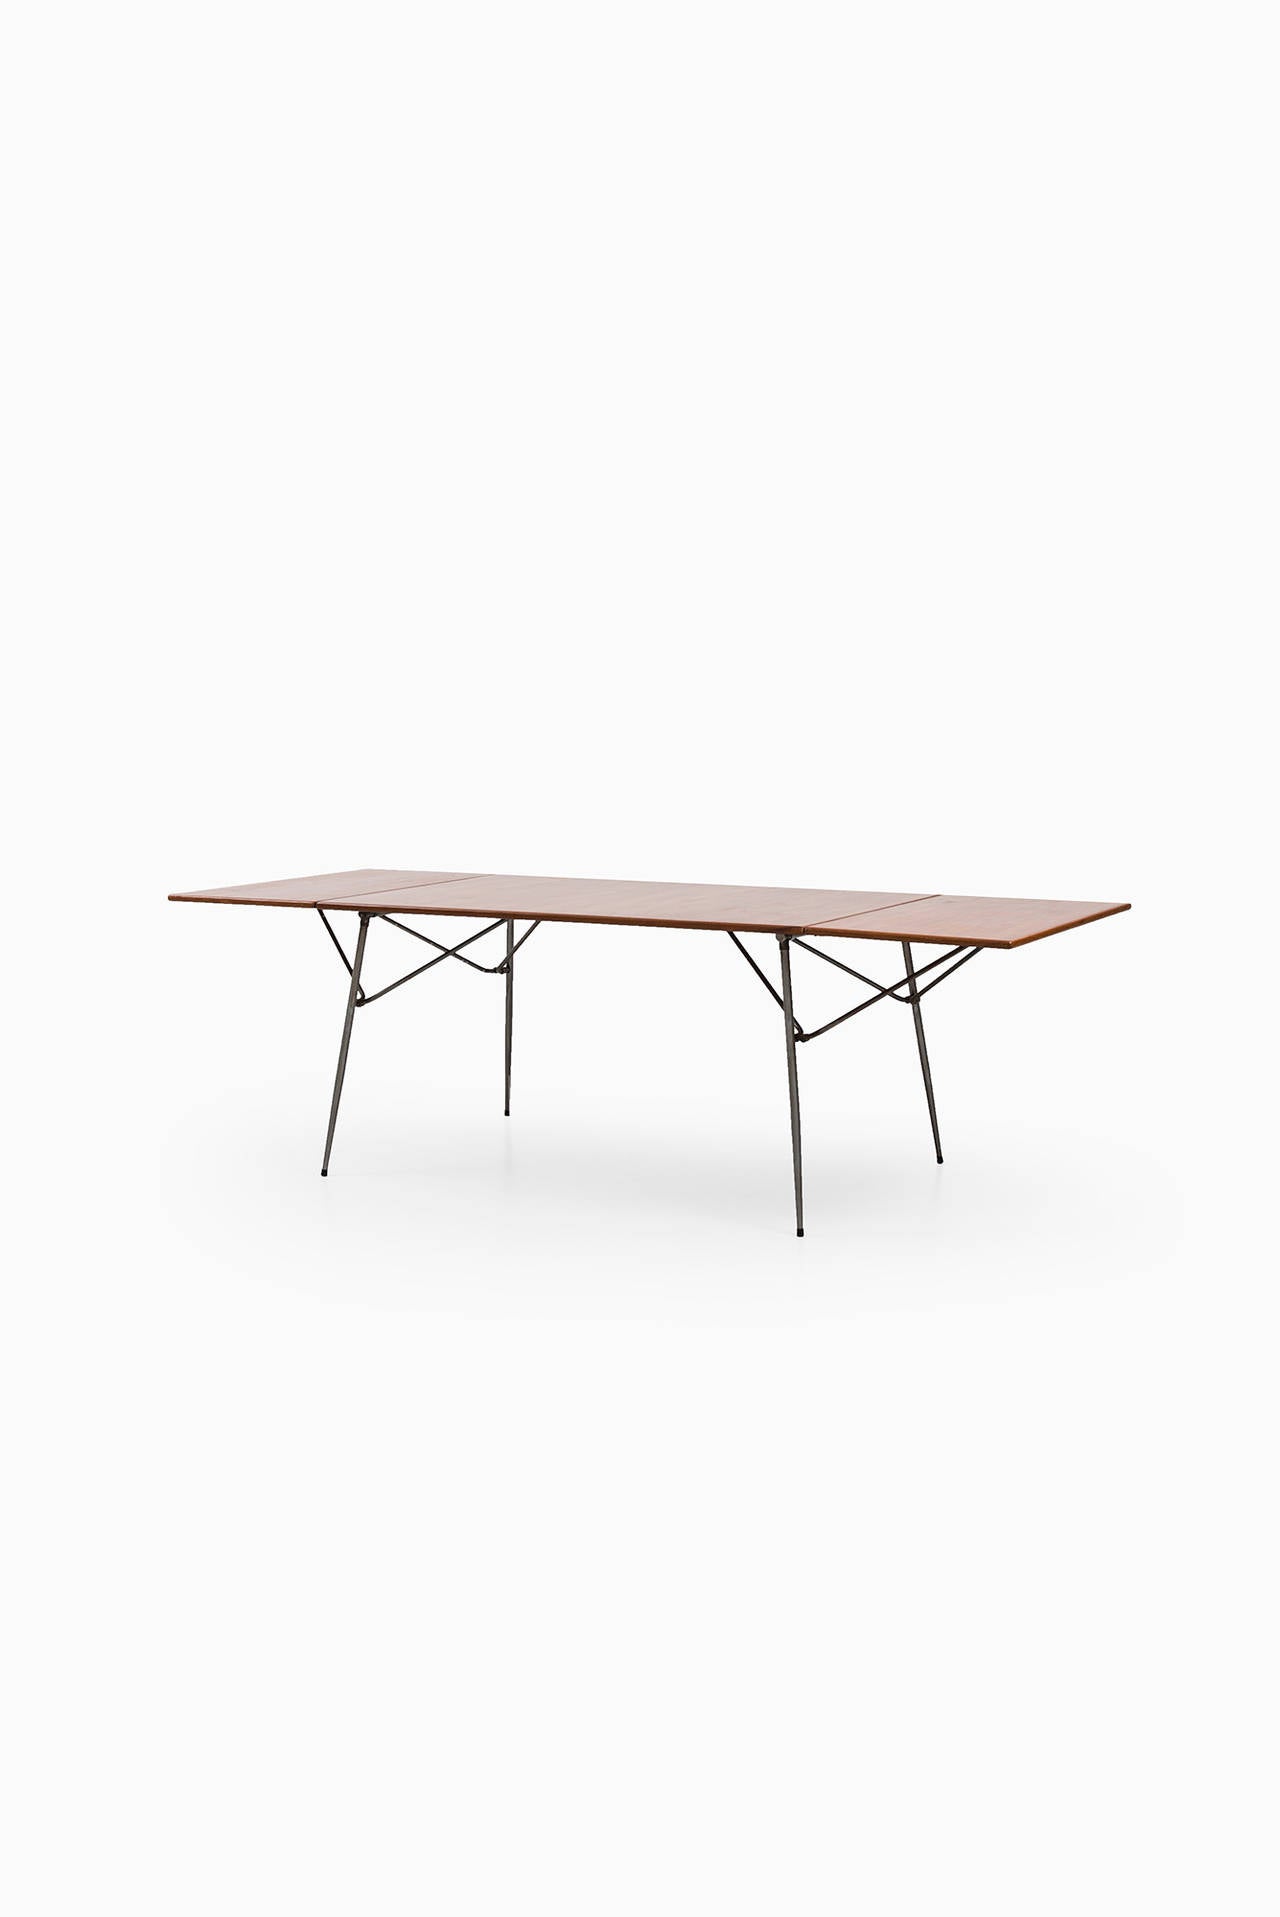 Rare dining table or desk designed in 1953 by Børge Mogensen. Produced by Søborg Møbler in Denmark.